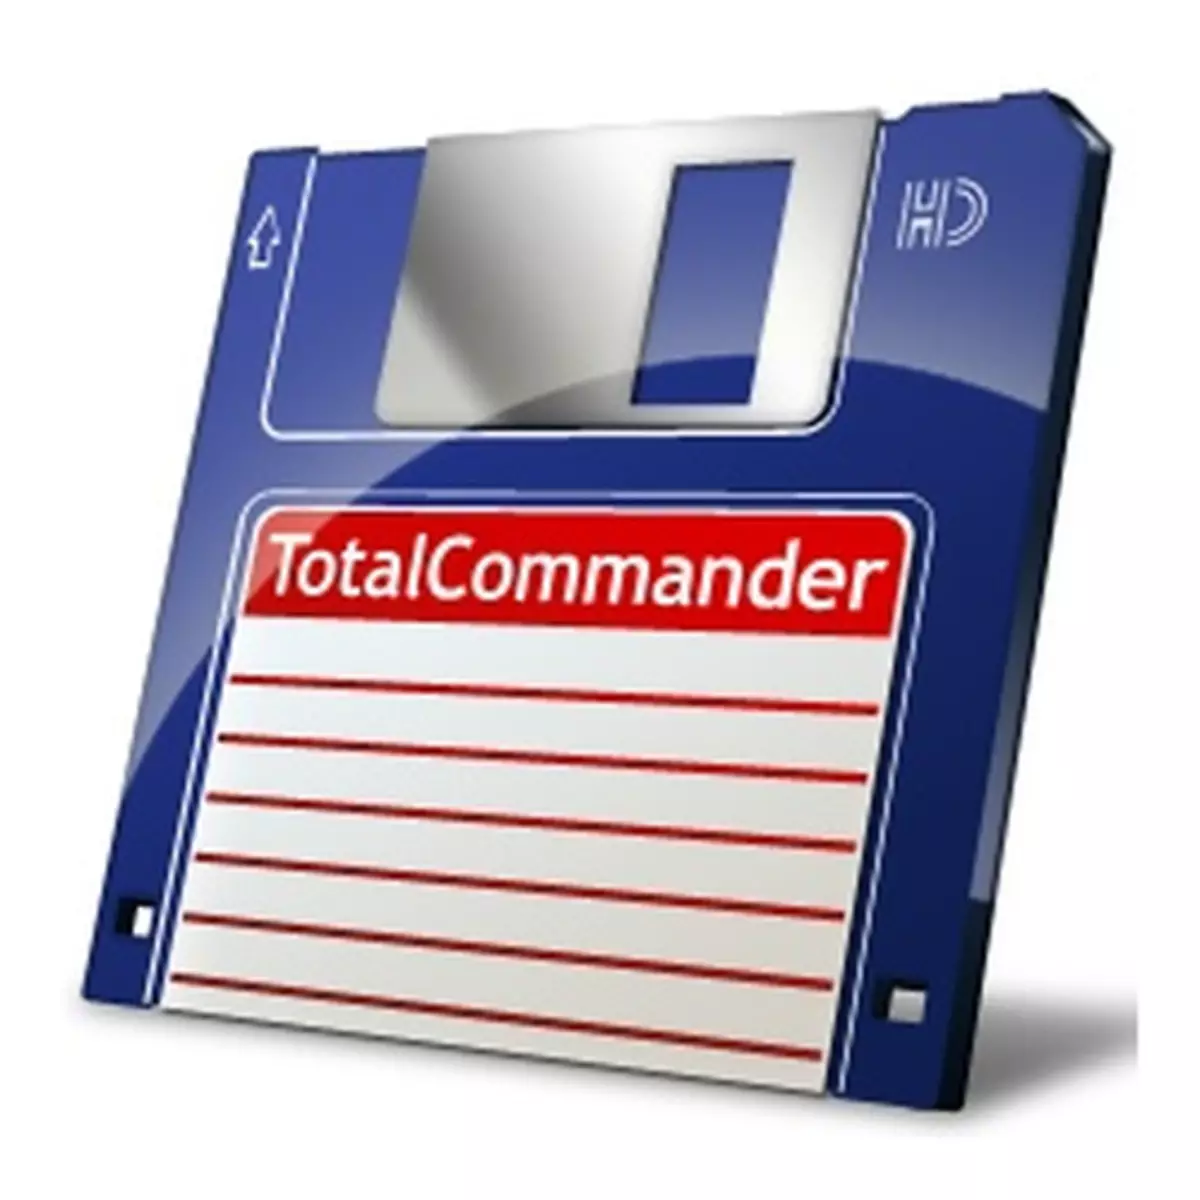 Total Commander File Manager